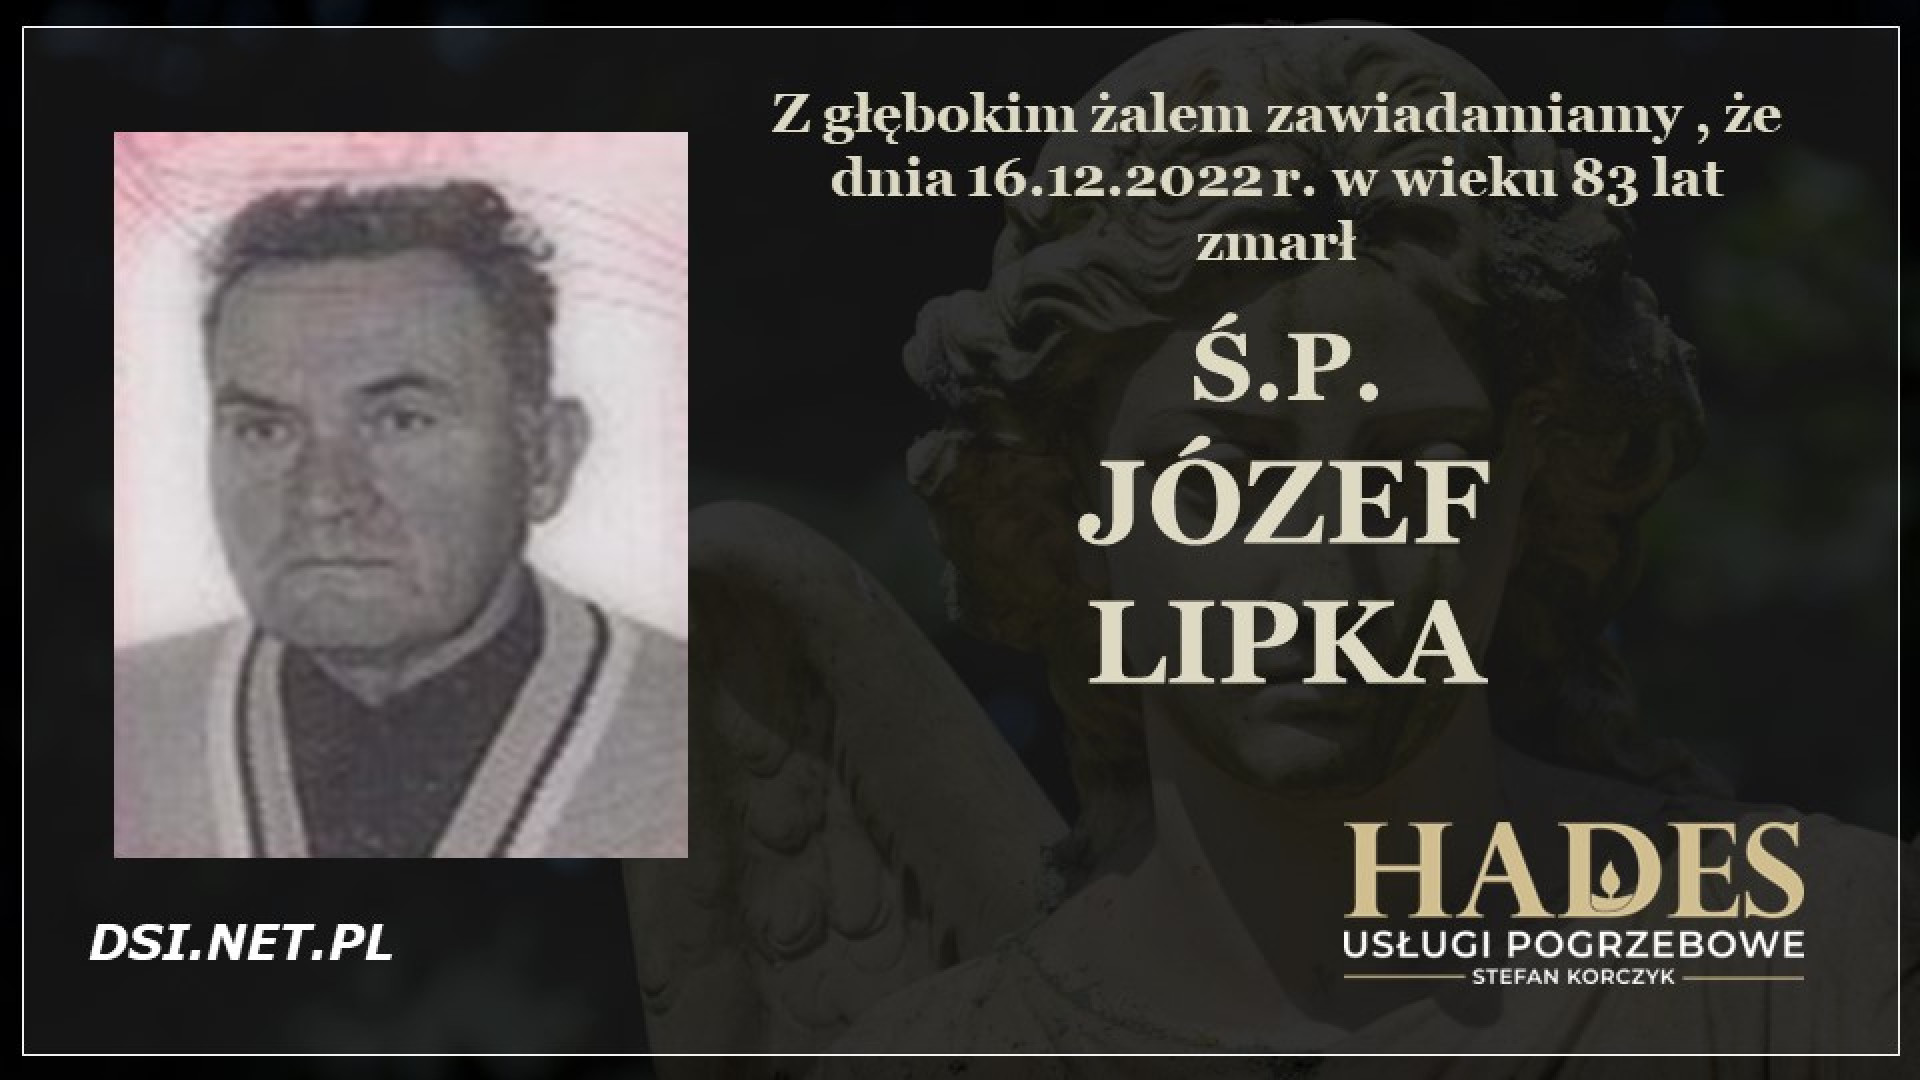 Ś.P. Józef Lipka